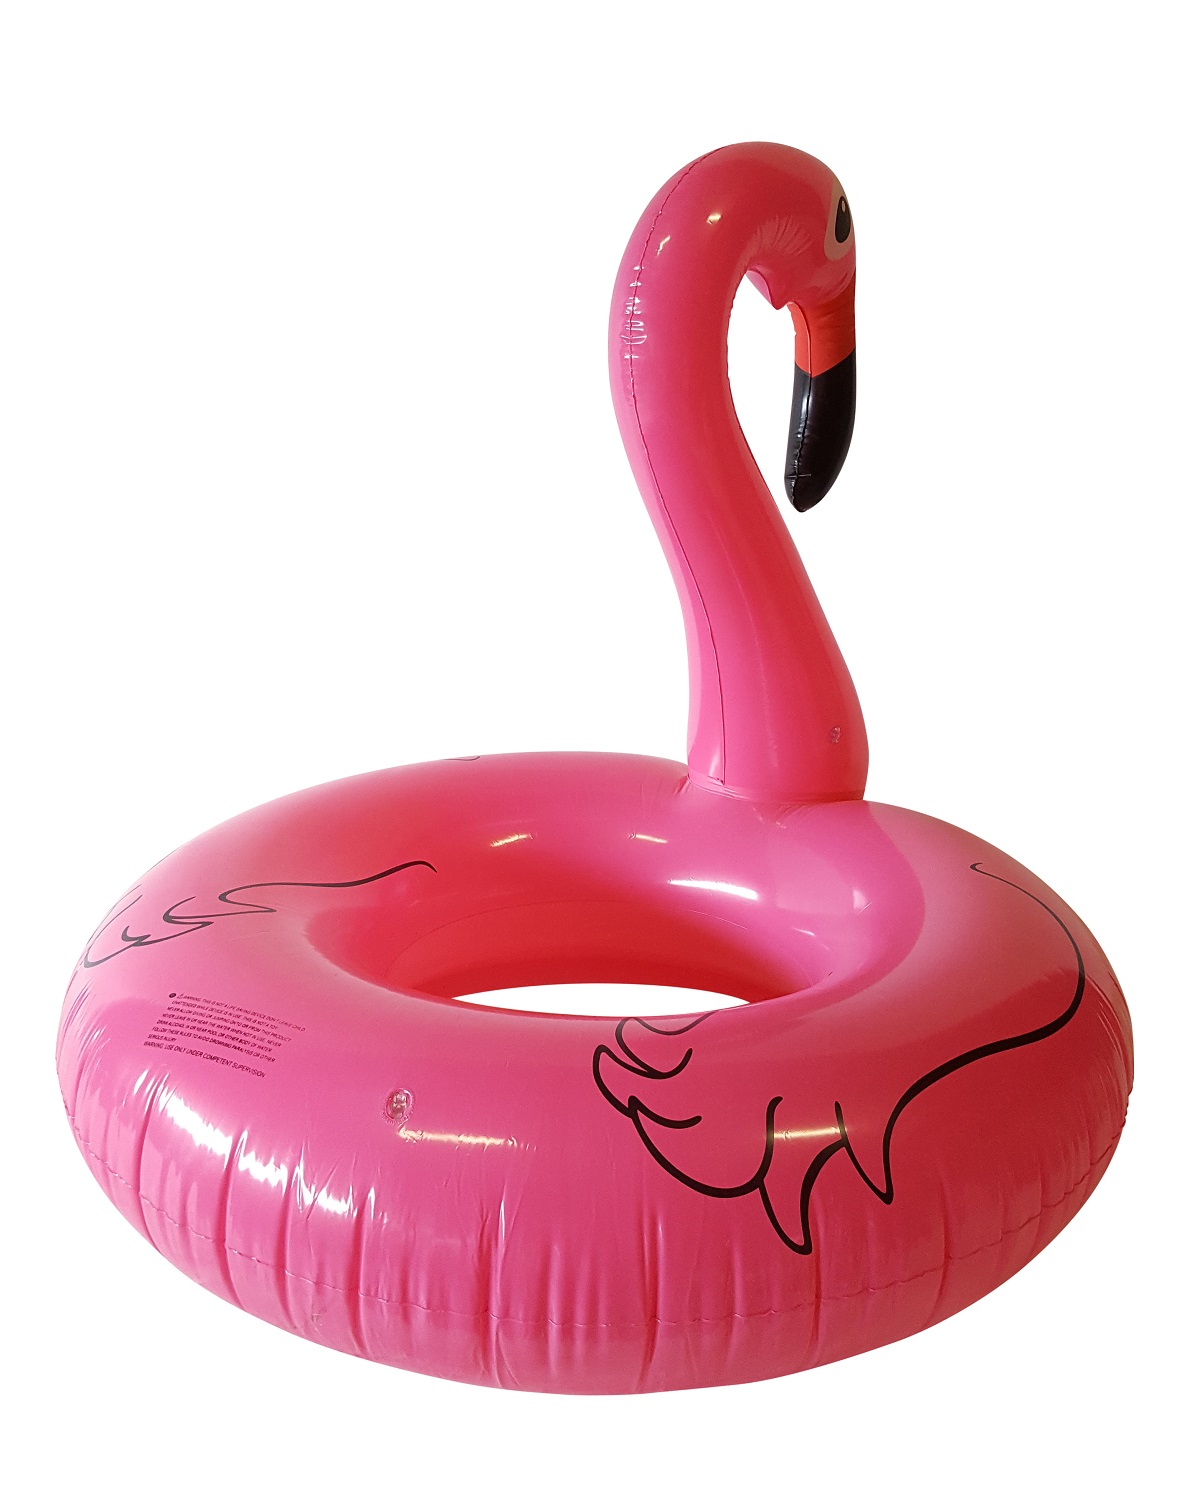 Flamingo kopen? Natuurlijk bij Kunstpalm.nl